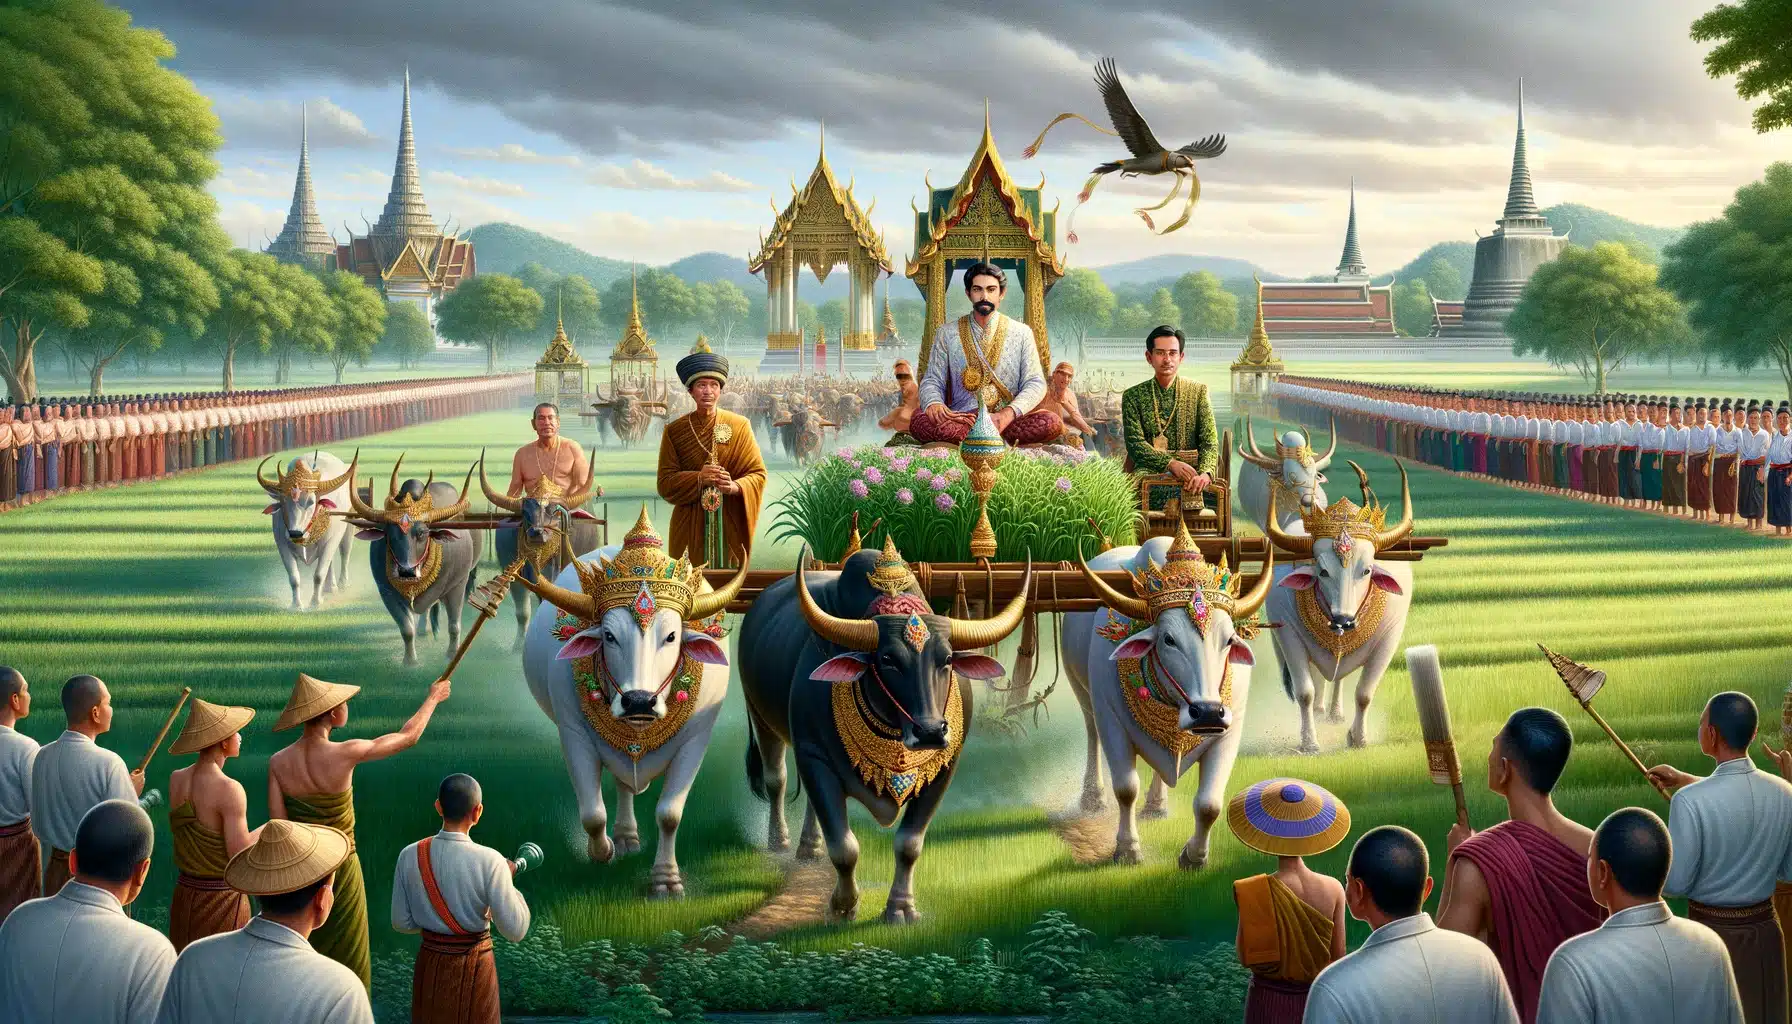 พระราชพิธีจรดพระนังคัลแรกนาขวัญในประเทศไทย พระมหากษัตริย์ทรงประกอบพิธีไถนาพร้อมโคตกแต่งอย่างงดงาม เกษตรกรไทยในชุดไทยโบราณล้อมรอบพิธี พระสงฆ์ร่วมสวดมนต์เป็นส่วนหนึ่งของพิธี พื้นหลังเป็นทุ่งนาเขียวขจีใต้ท้องฟ้าสีครามสดใส มีวัดโบราณในระยะไกล สะท้อนถึงประวัติศาสตร์ยาวนานของพิธีตั้งแต่สมัยสุโขทัยจนถึงยุครัตนโกสินทร์
